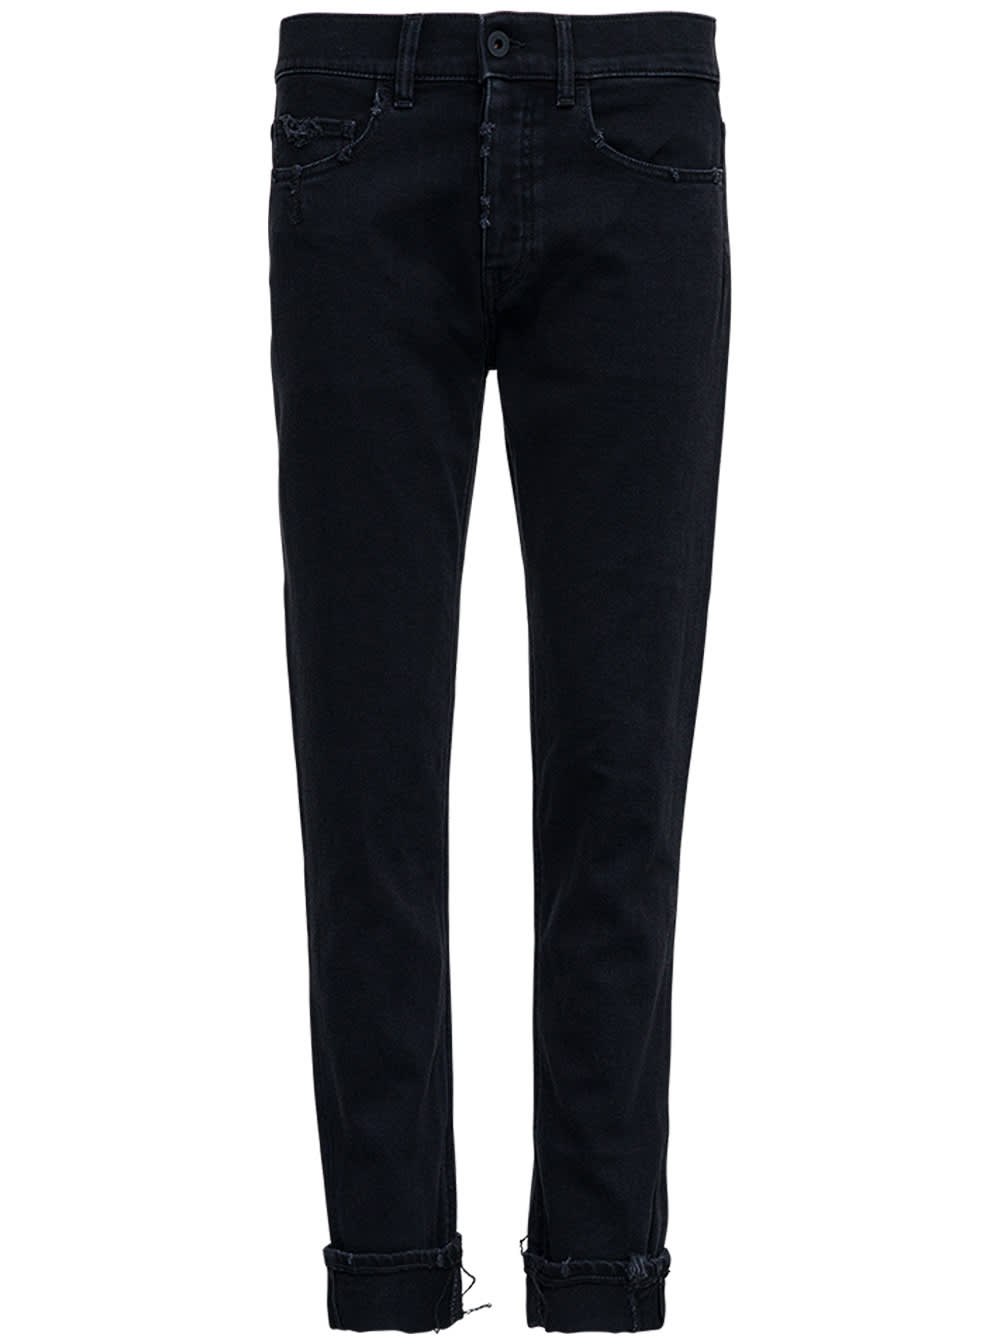 Pence Black Five Pockets Denim Jeans